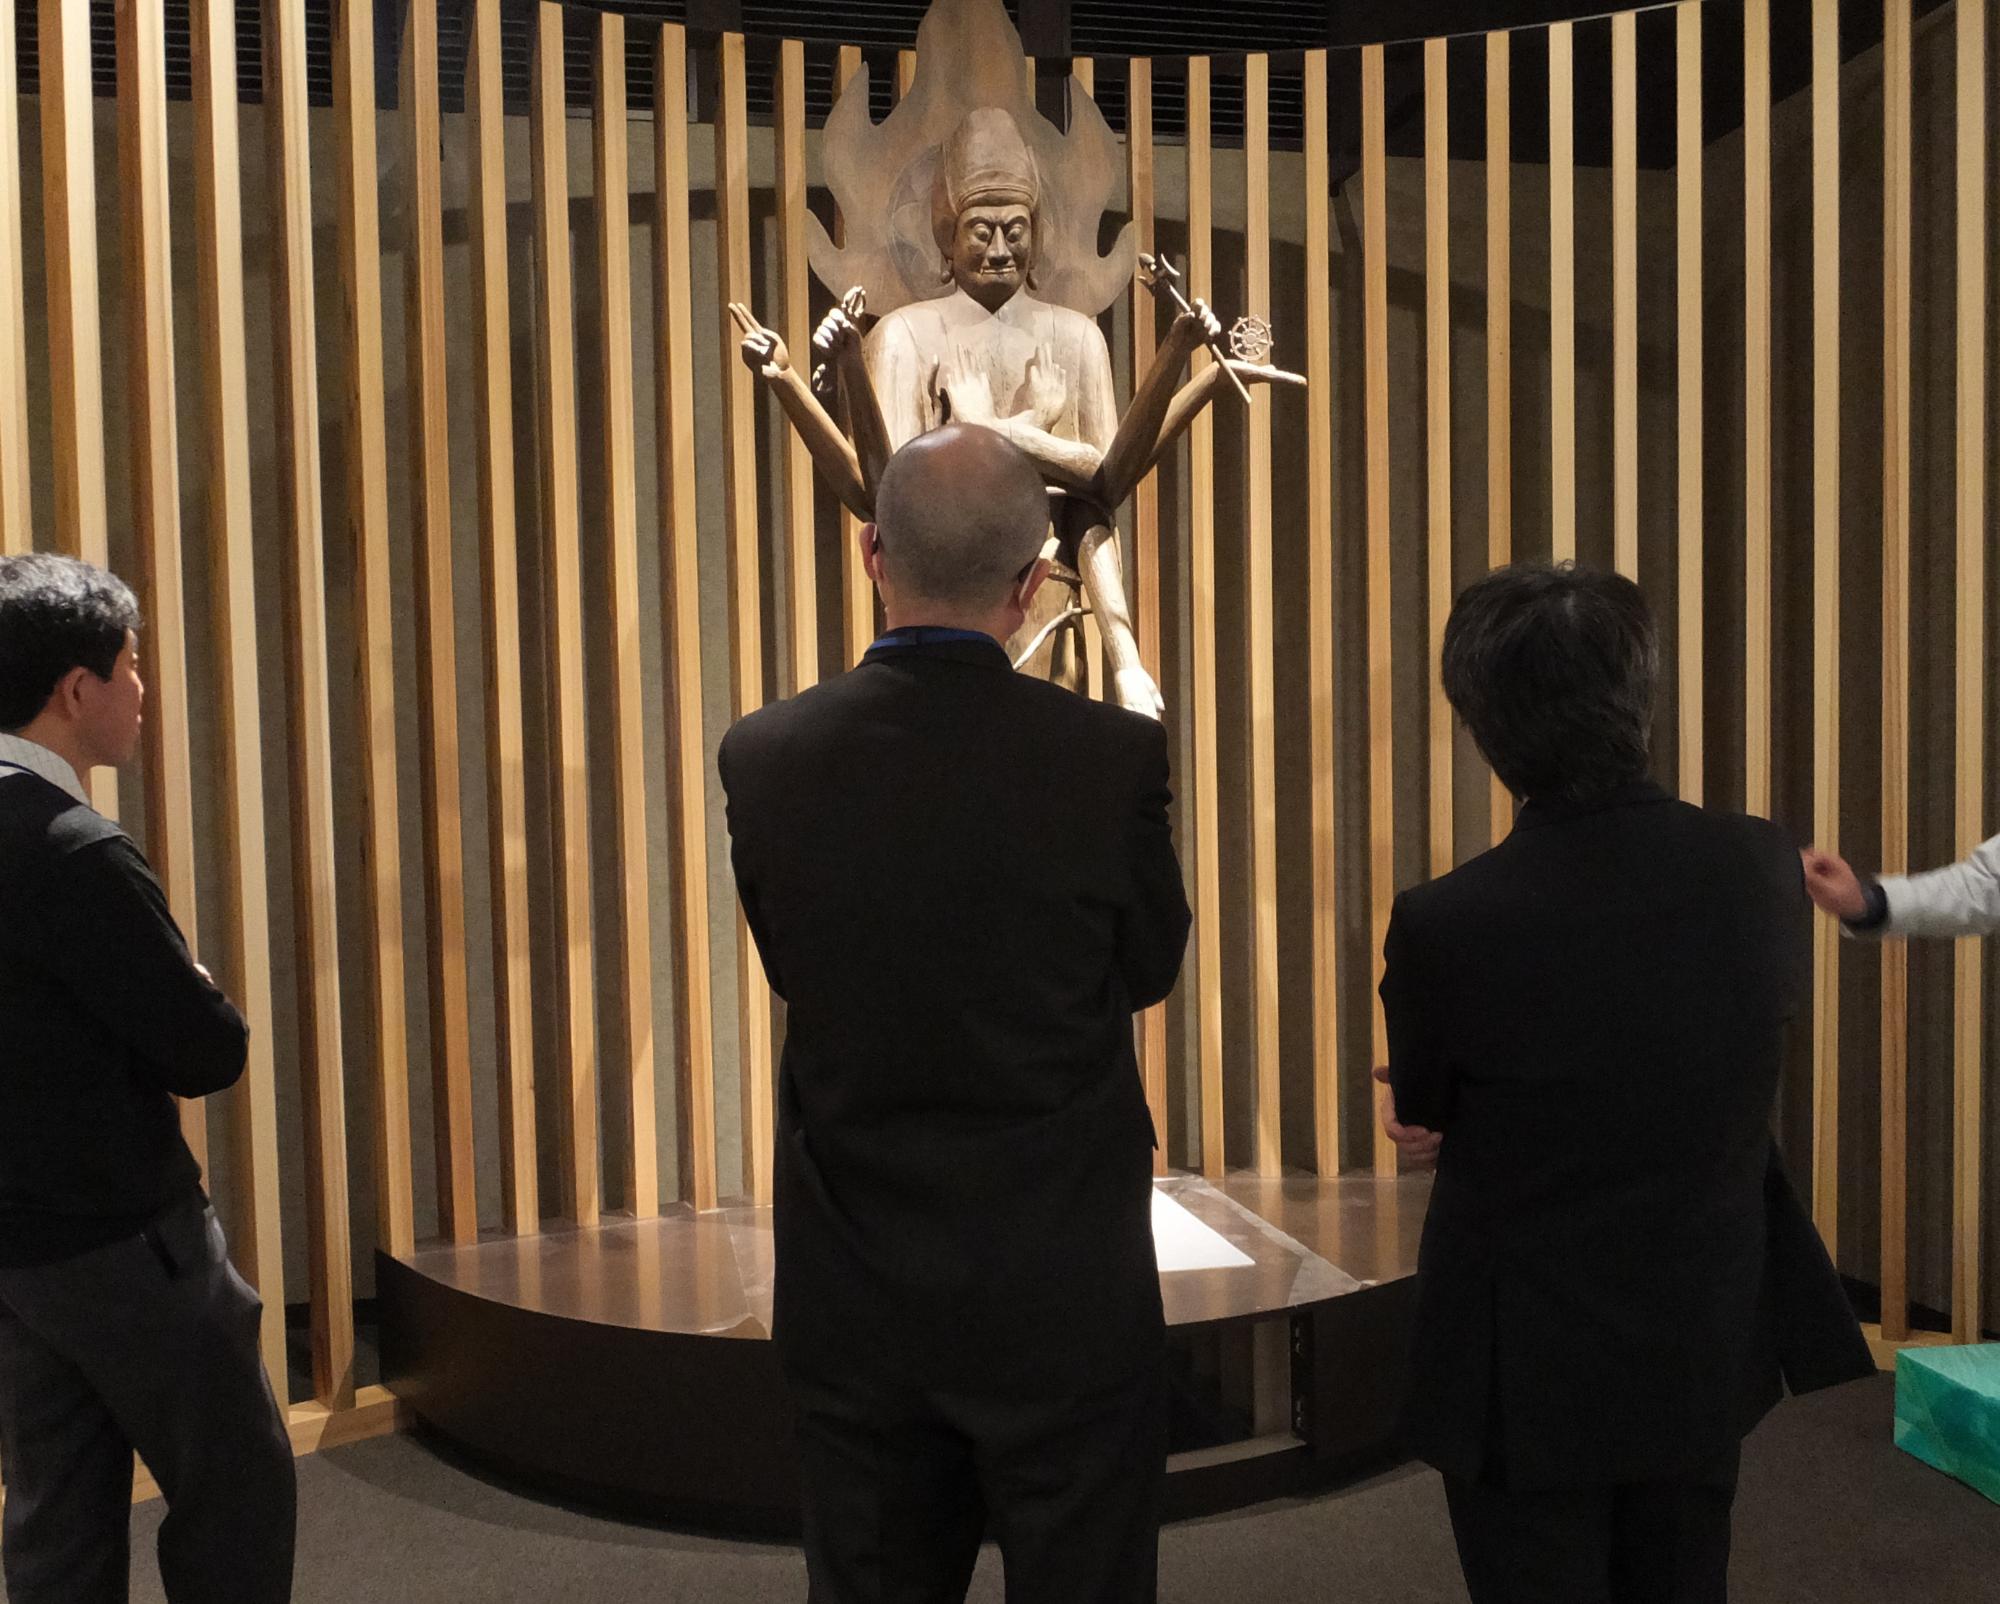 展示されている木造軍荼利明王立像を鑑賞する人たちの写真